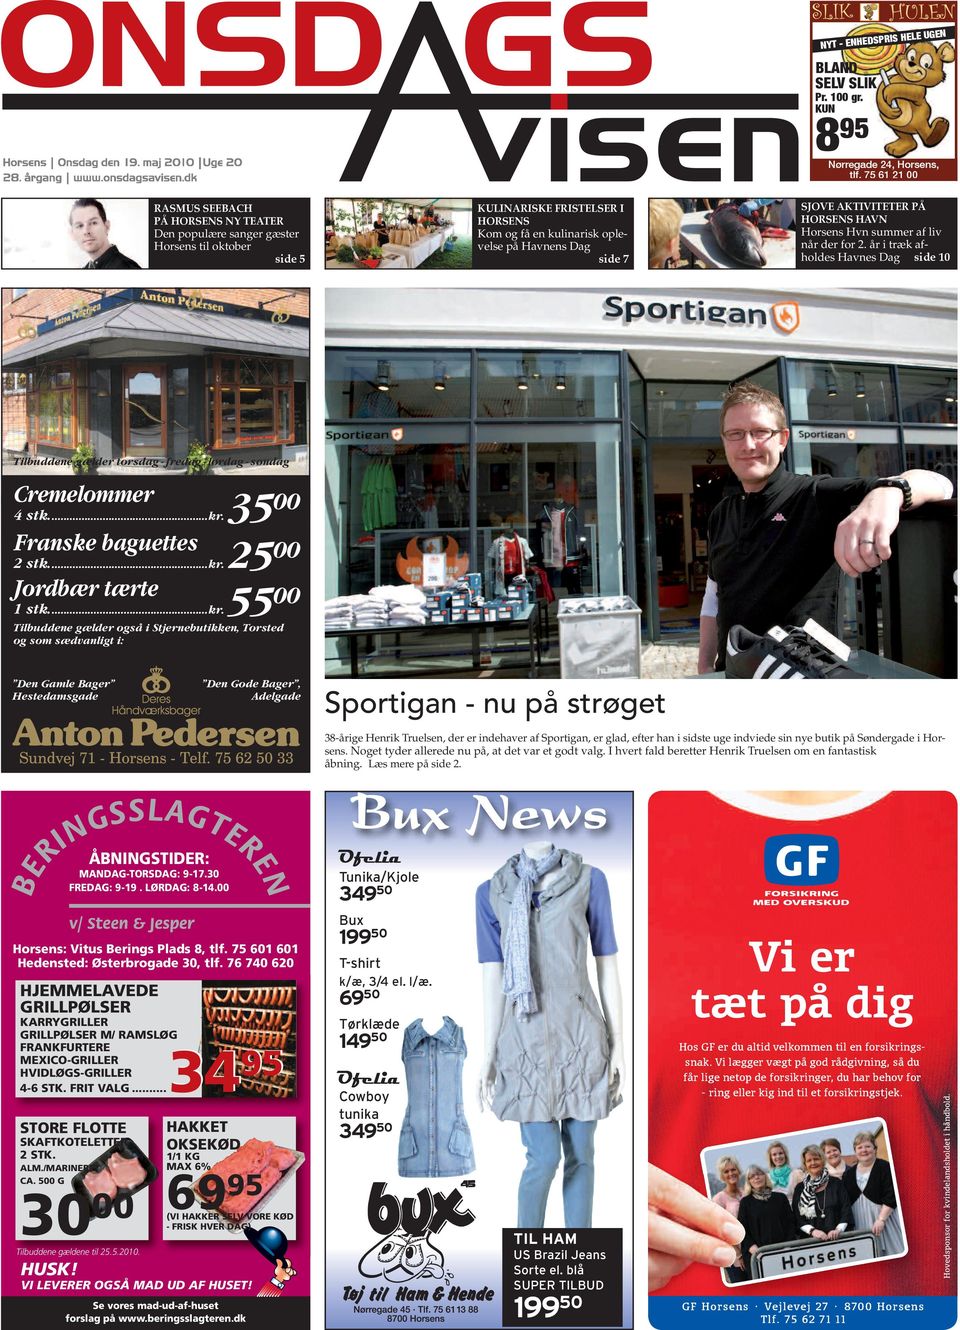 Bux News. 895 Nørregade 24, Horsens, tlf Vi er tæt på dig. Sportigan - nu  på strøget. Cremelommer. Franske baguettes. - PDF Gratis download